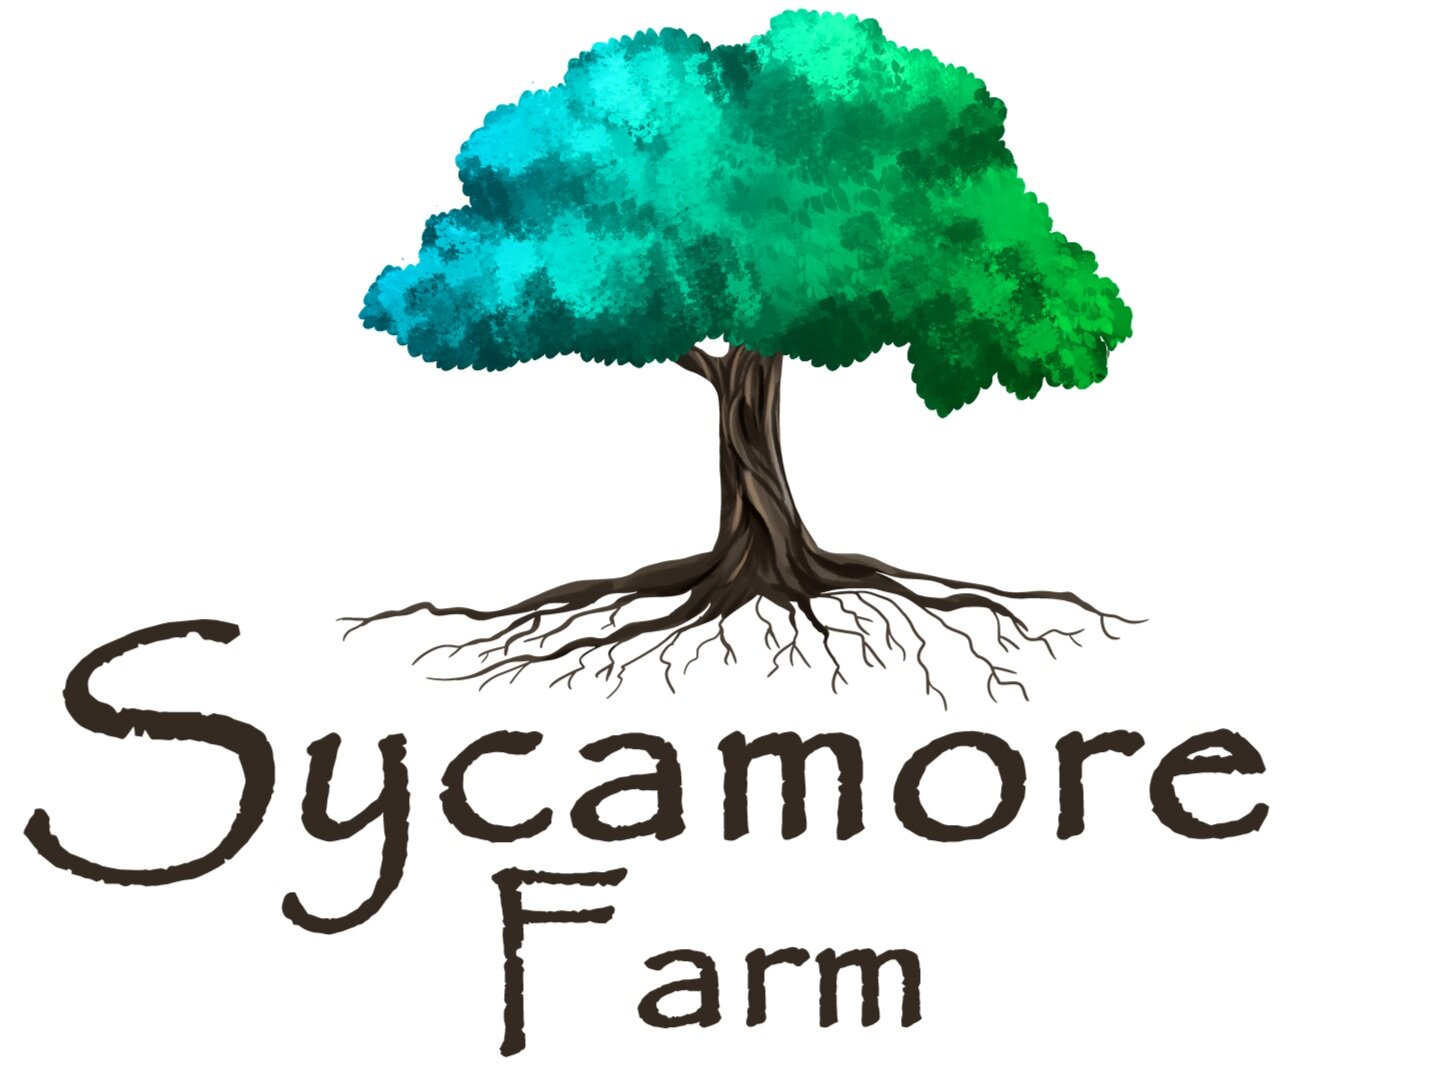 Sycamore Farm Ky Inc.